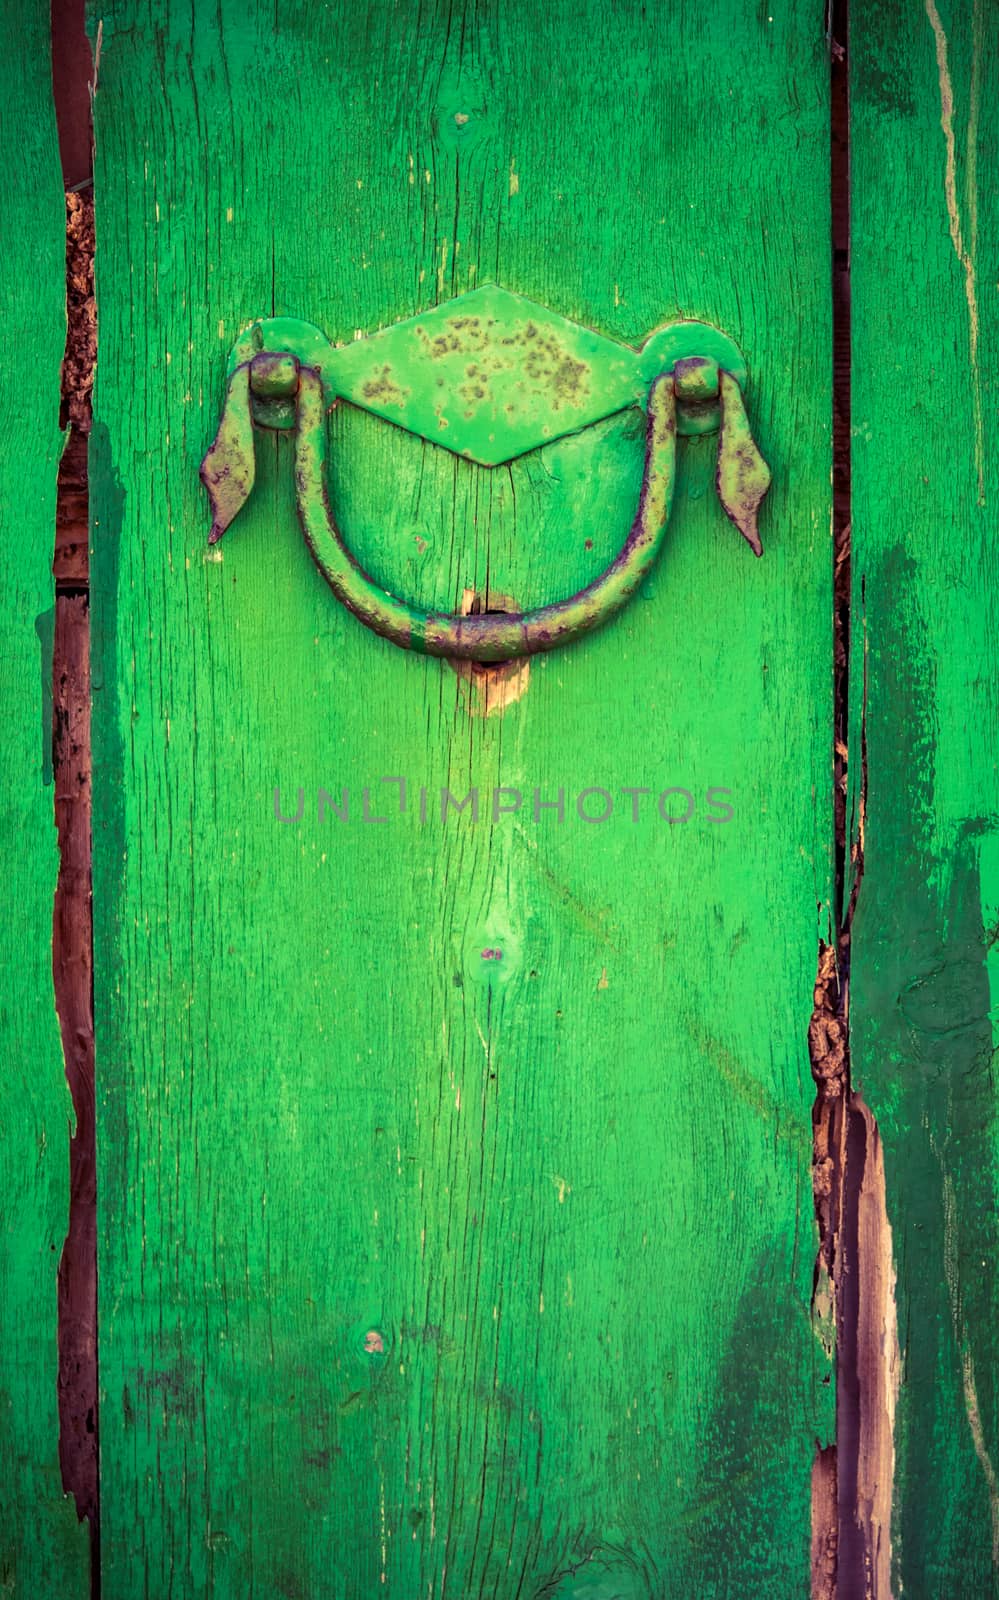 Rustic Wooden Door With Handle by mrdoomits